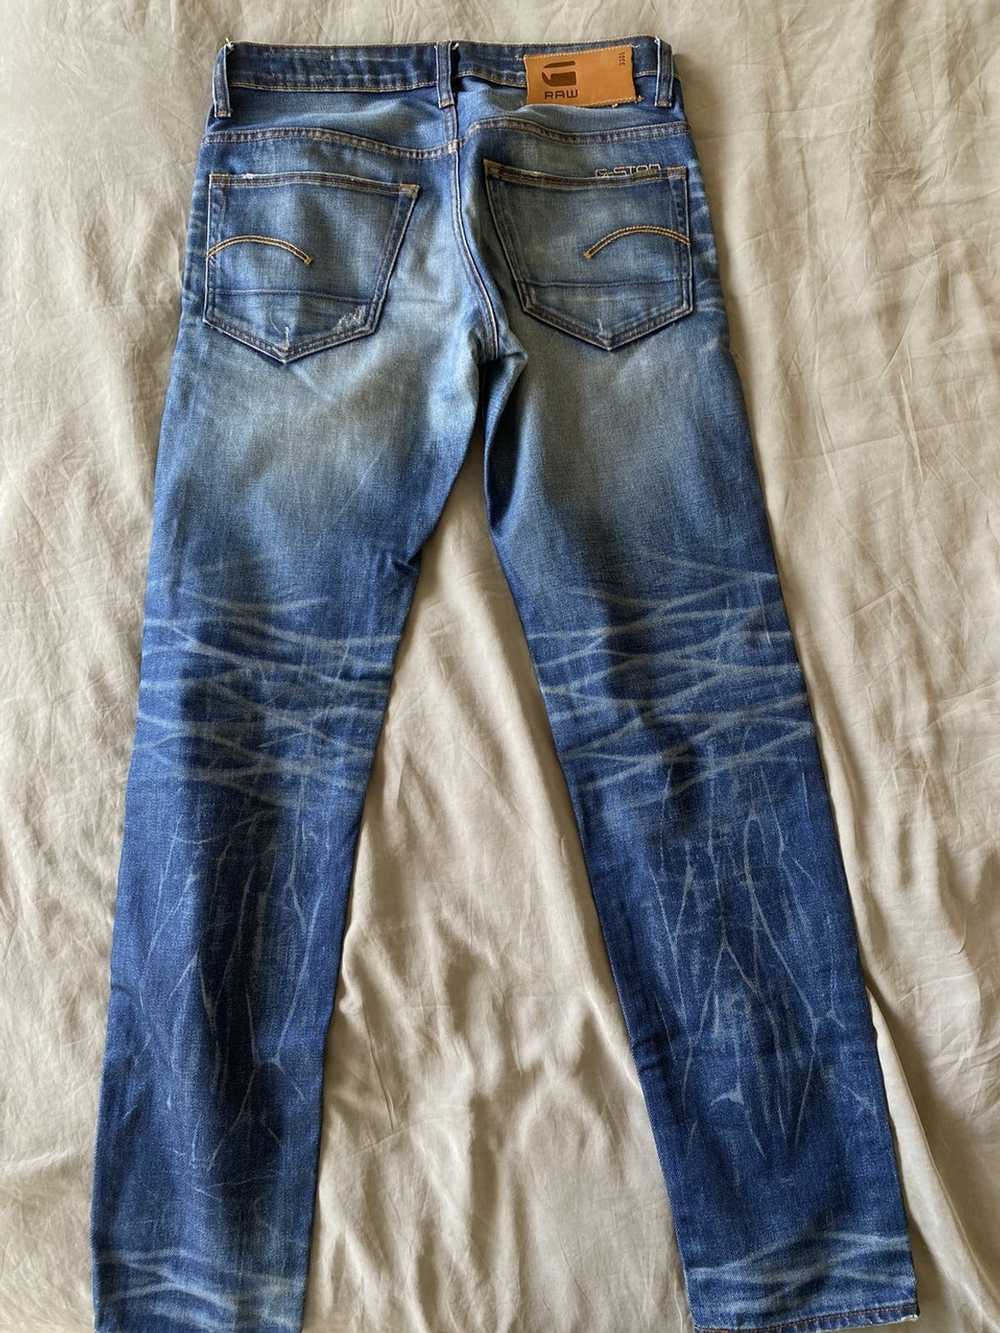 Gstar G-star jeans 3301. - image 2